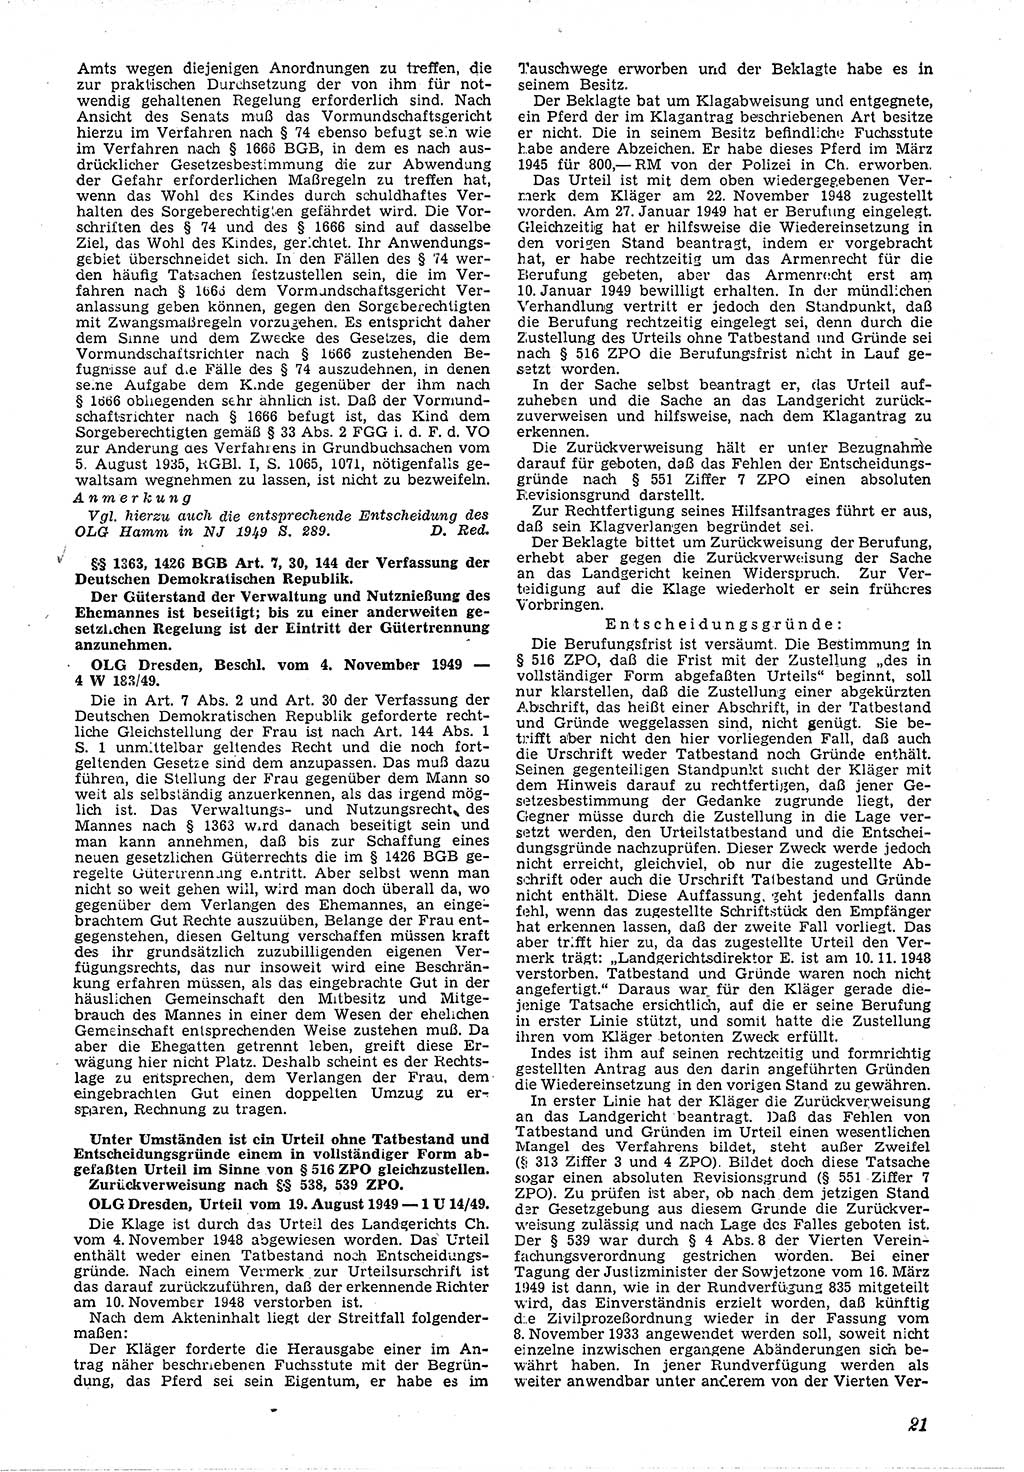 Neue Justiz (NJ), Zeitschrift für Recht und Rechtswissenschaft [Deutsche Demokratische Republik (DDR)], 4. Jahrgang 1950, Seite 21 (NJ DDR 1950, S. 21)